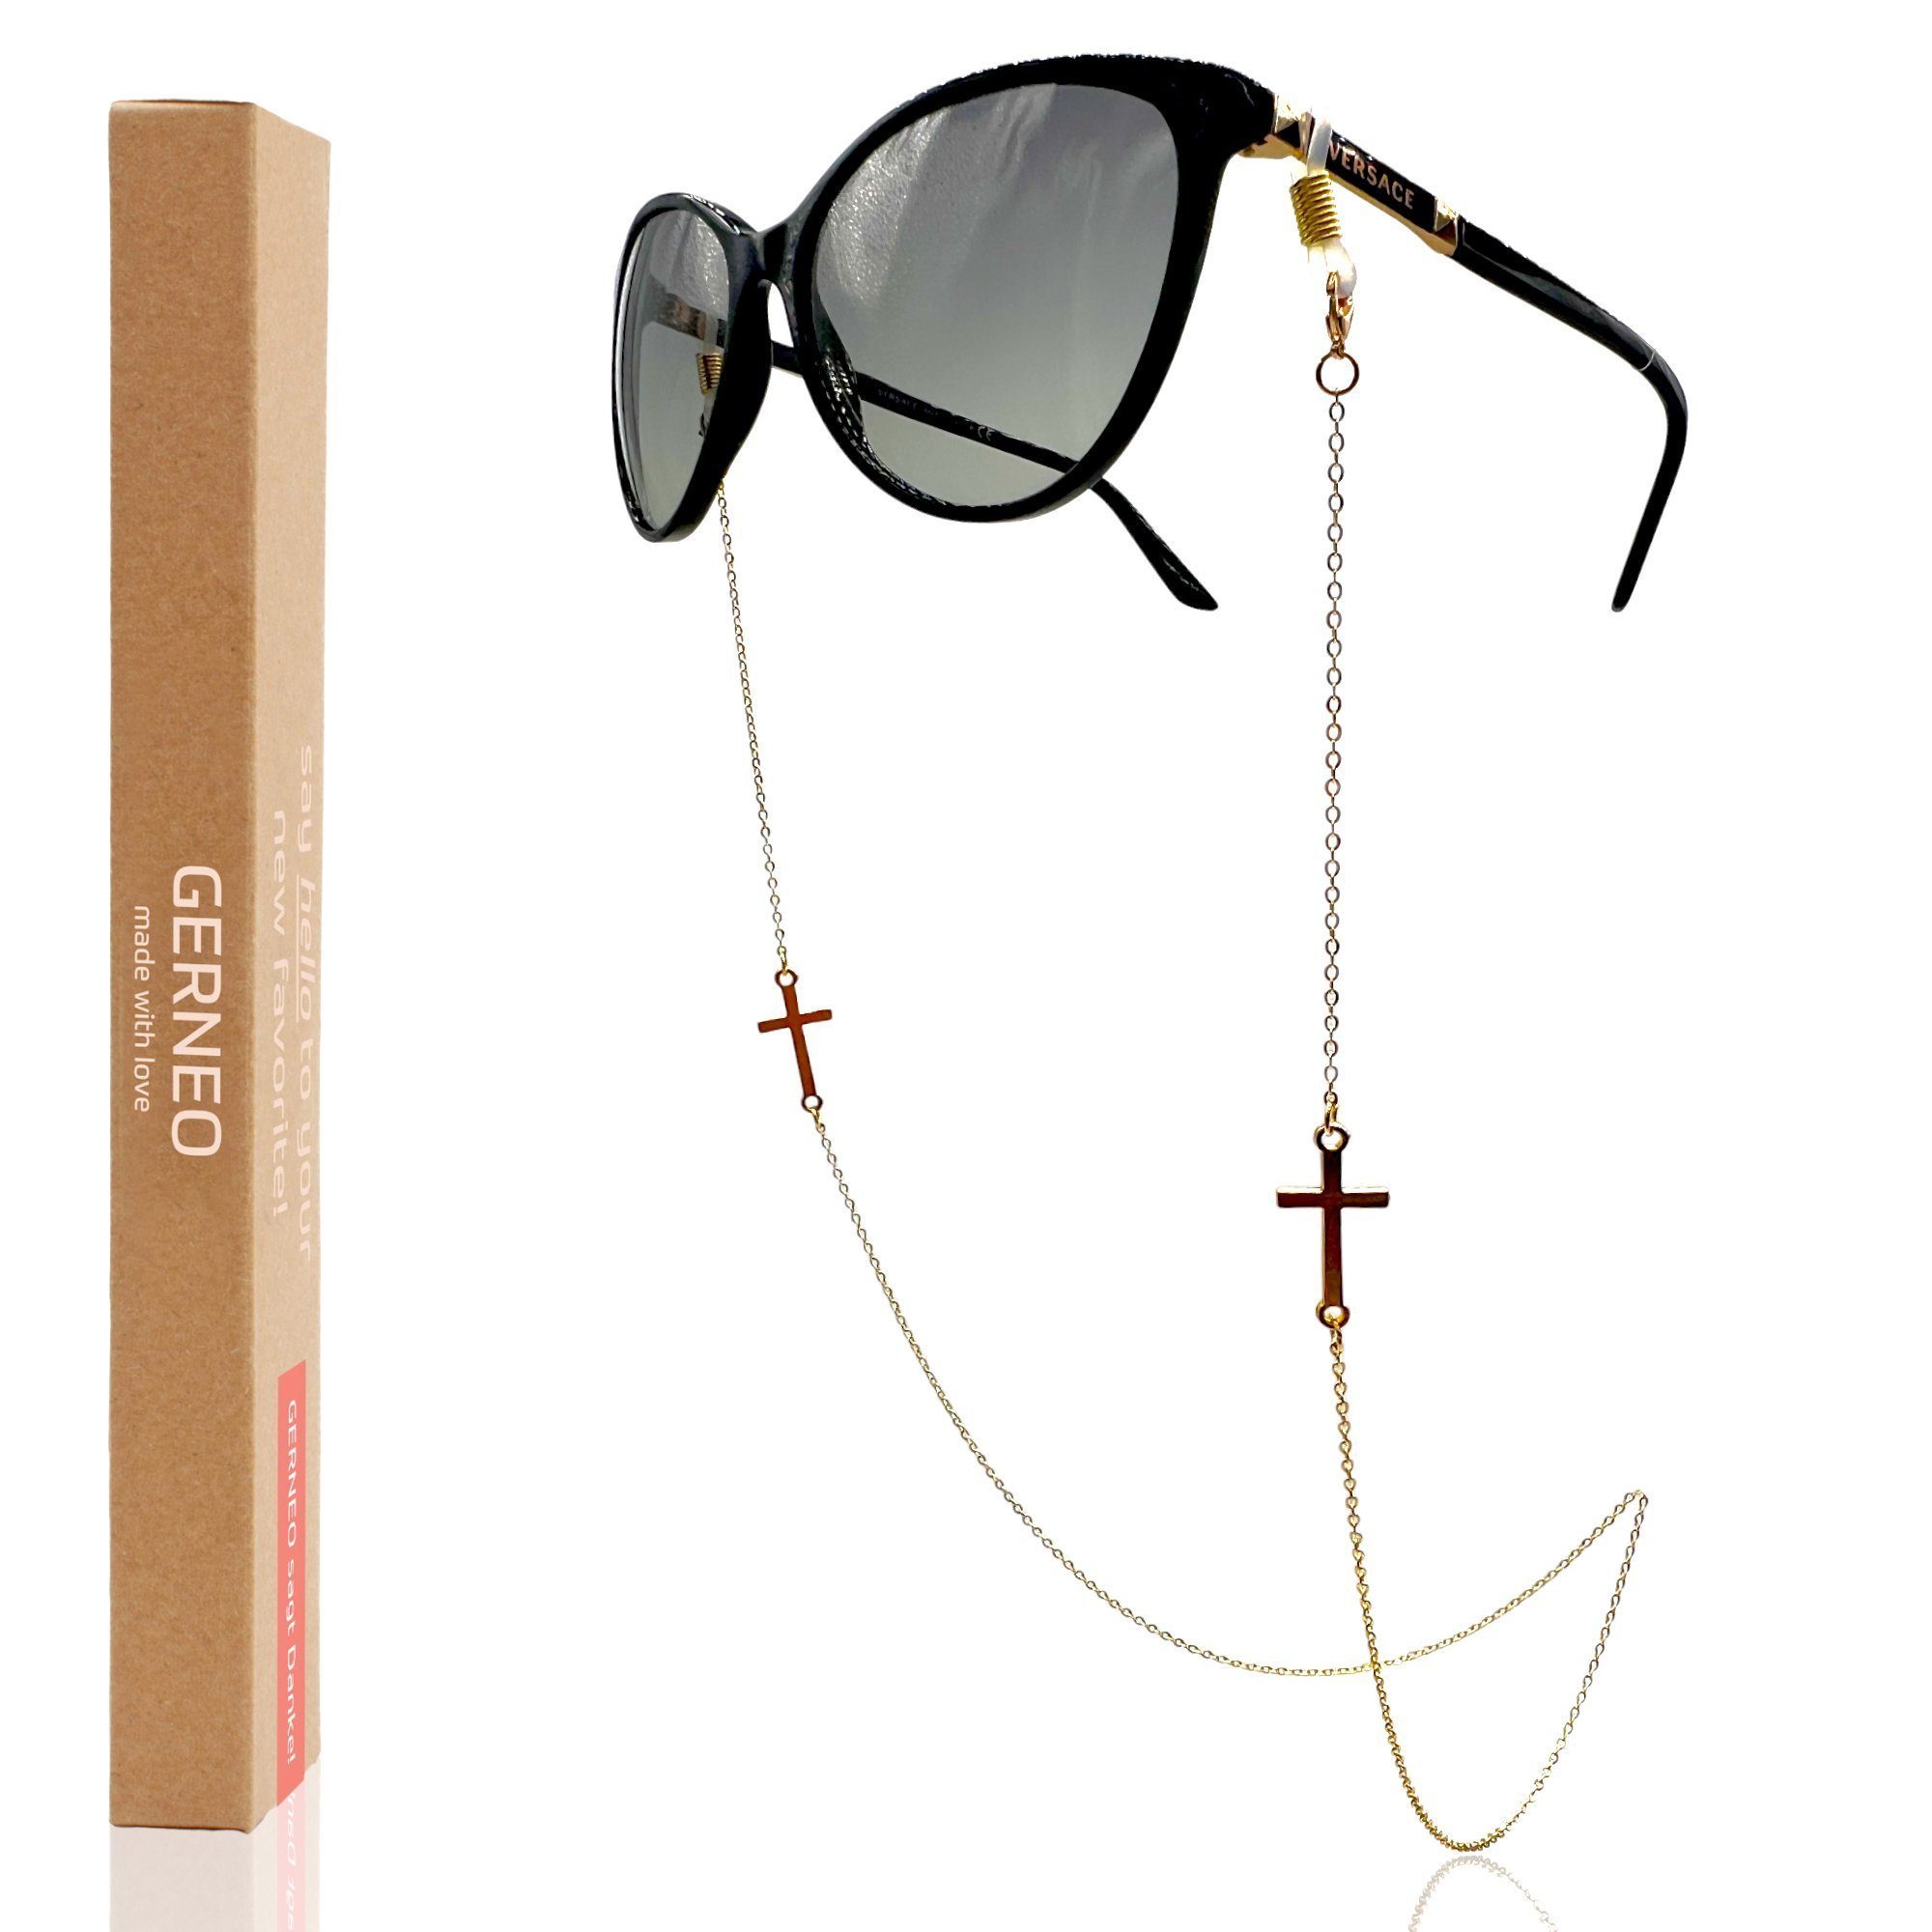 GERNEO Brillenkette GERNEO® – Rom – korrosionsbeständige Brillenkette & Maskenhalter, vergoldet oder versilbert – einzigartig hochwertige Brillenkette